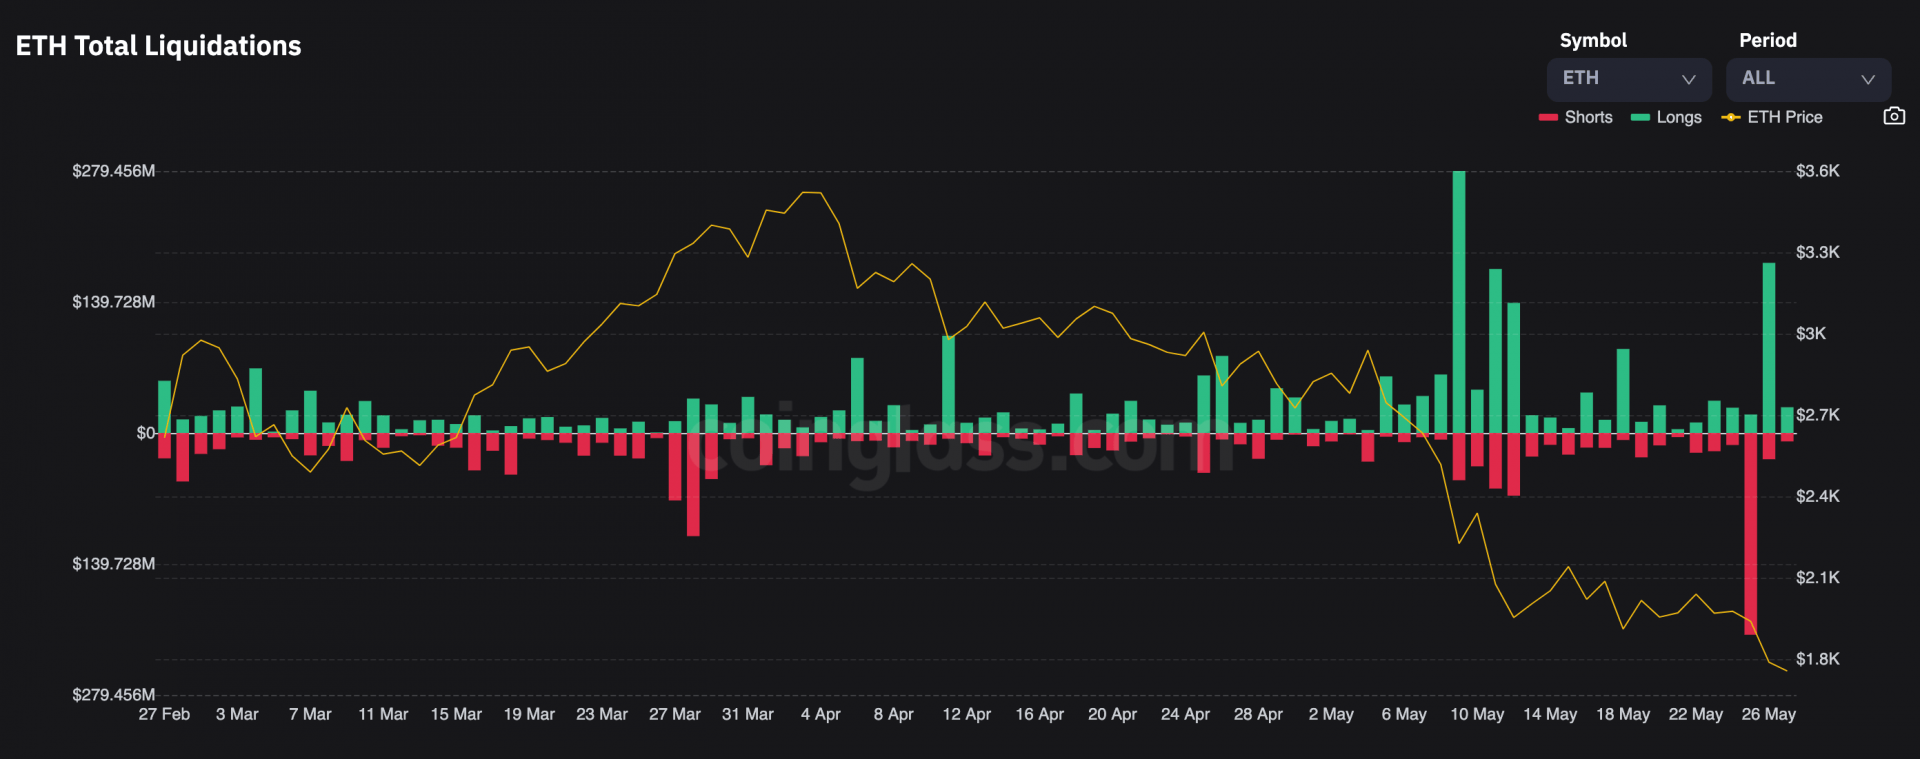 Ethereum a connu un pic moins important le 26 mai que le 9 mai alors que le prix est bien plus bas.